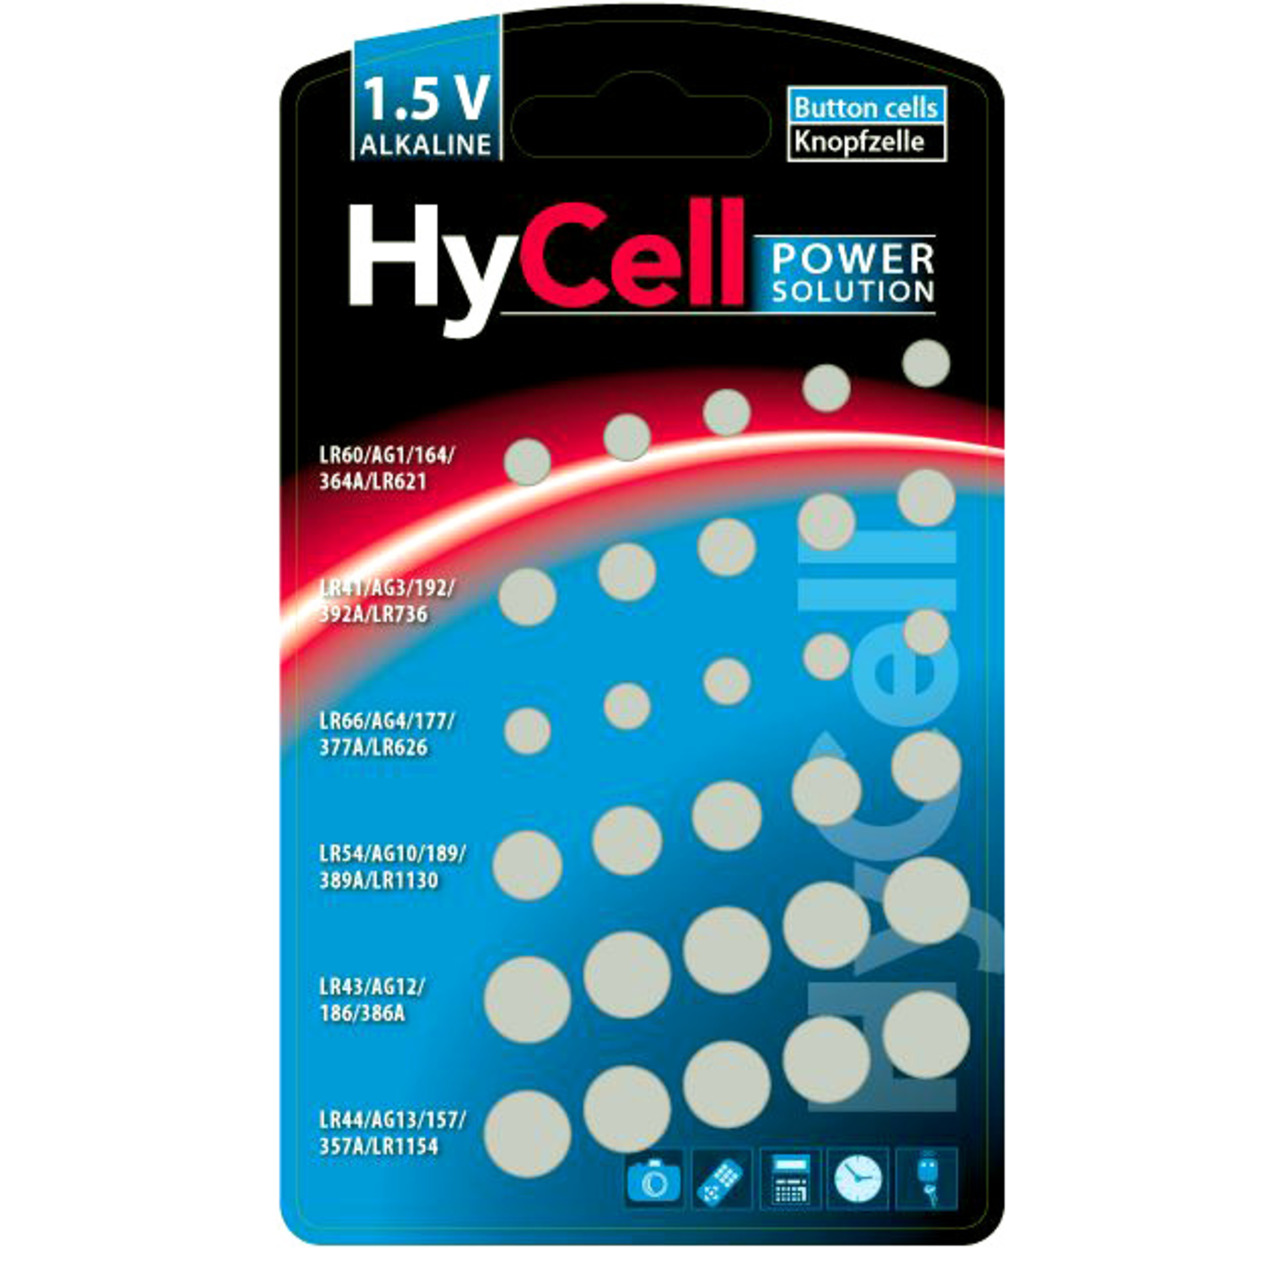 Hycell Alkaline-Knopfzellen-Set- 1-5 V- 30 Stck unter Stromversorgung